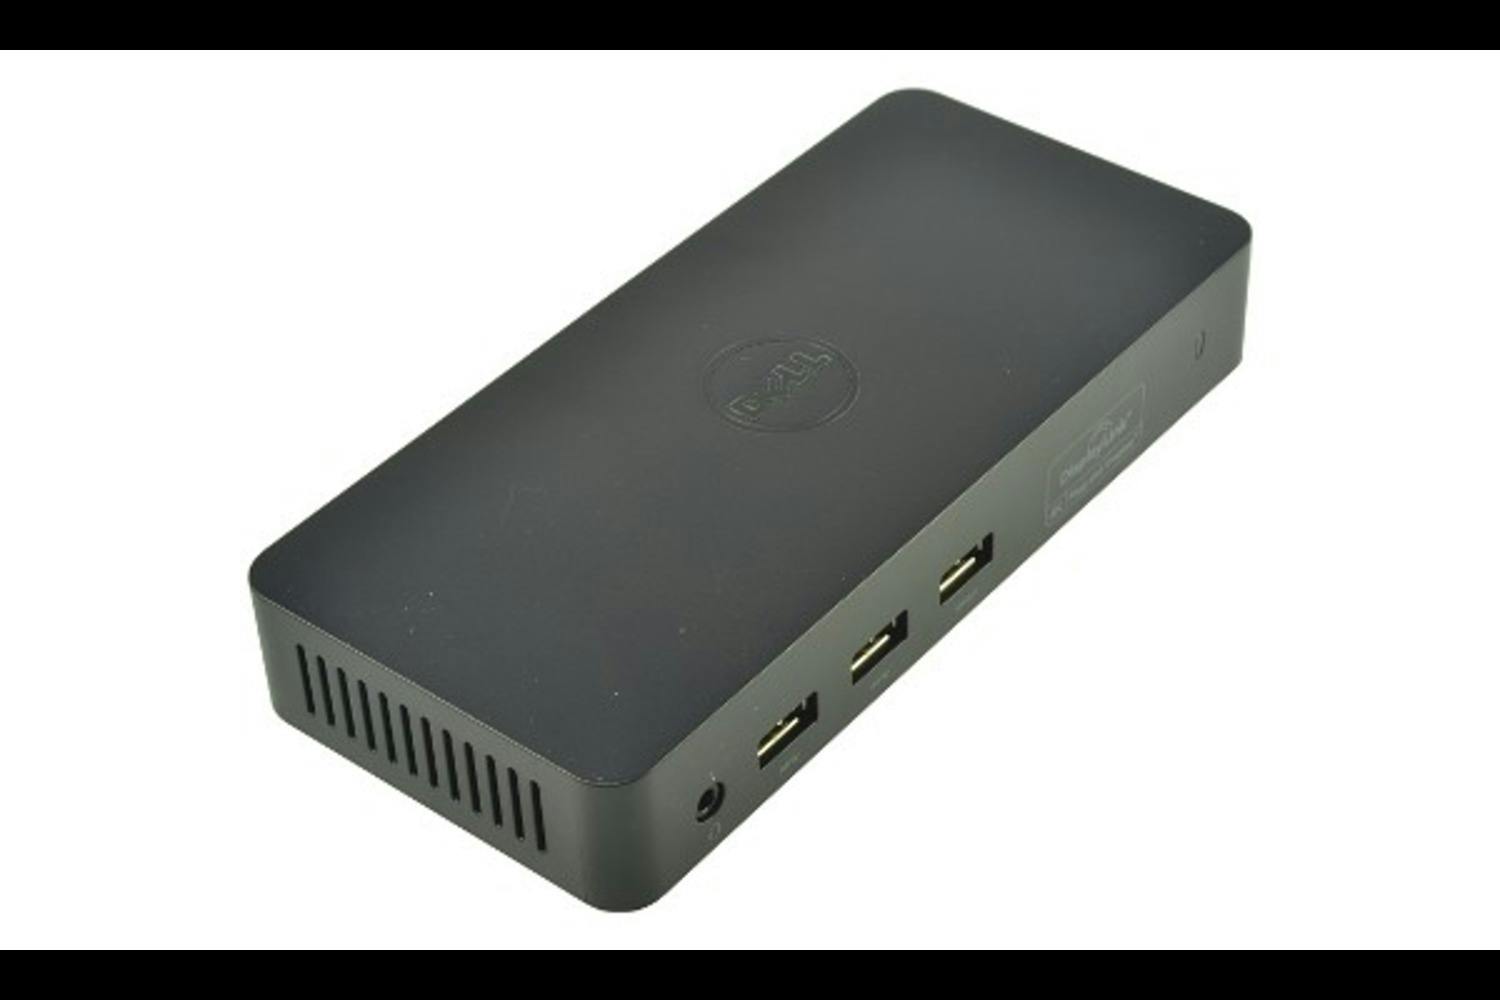 Dell Docking Station USB 3.0 Ultra HD/4K Triple Display (D3100), Black